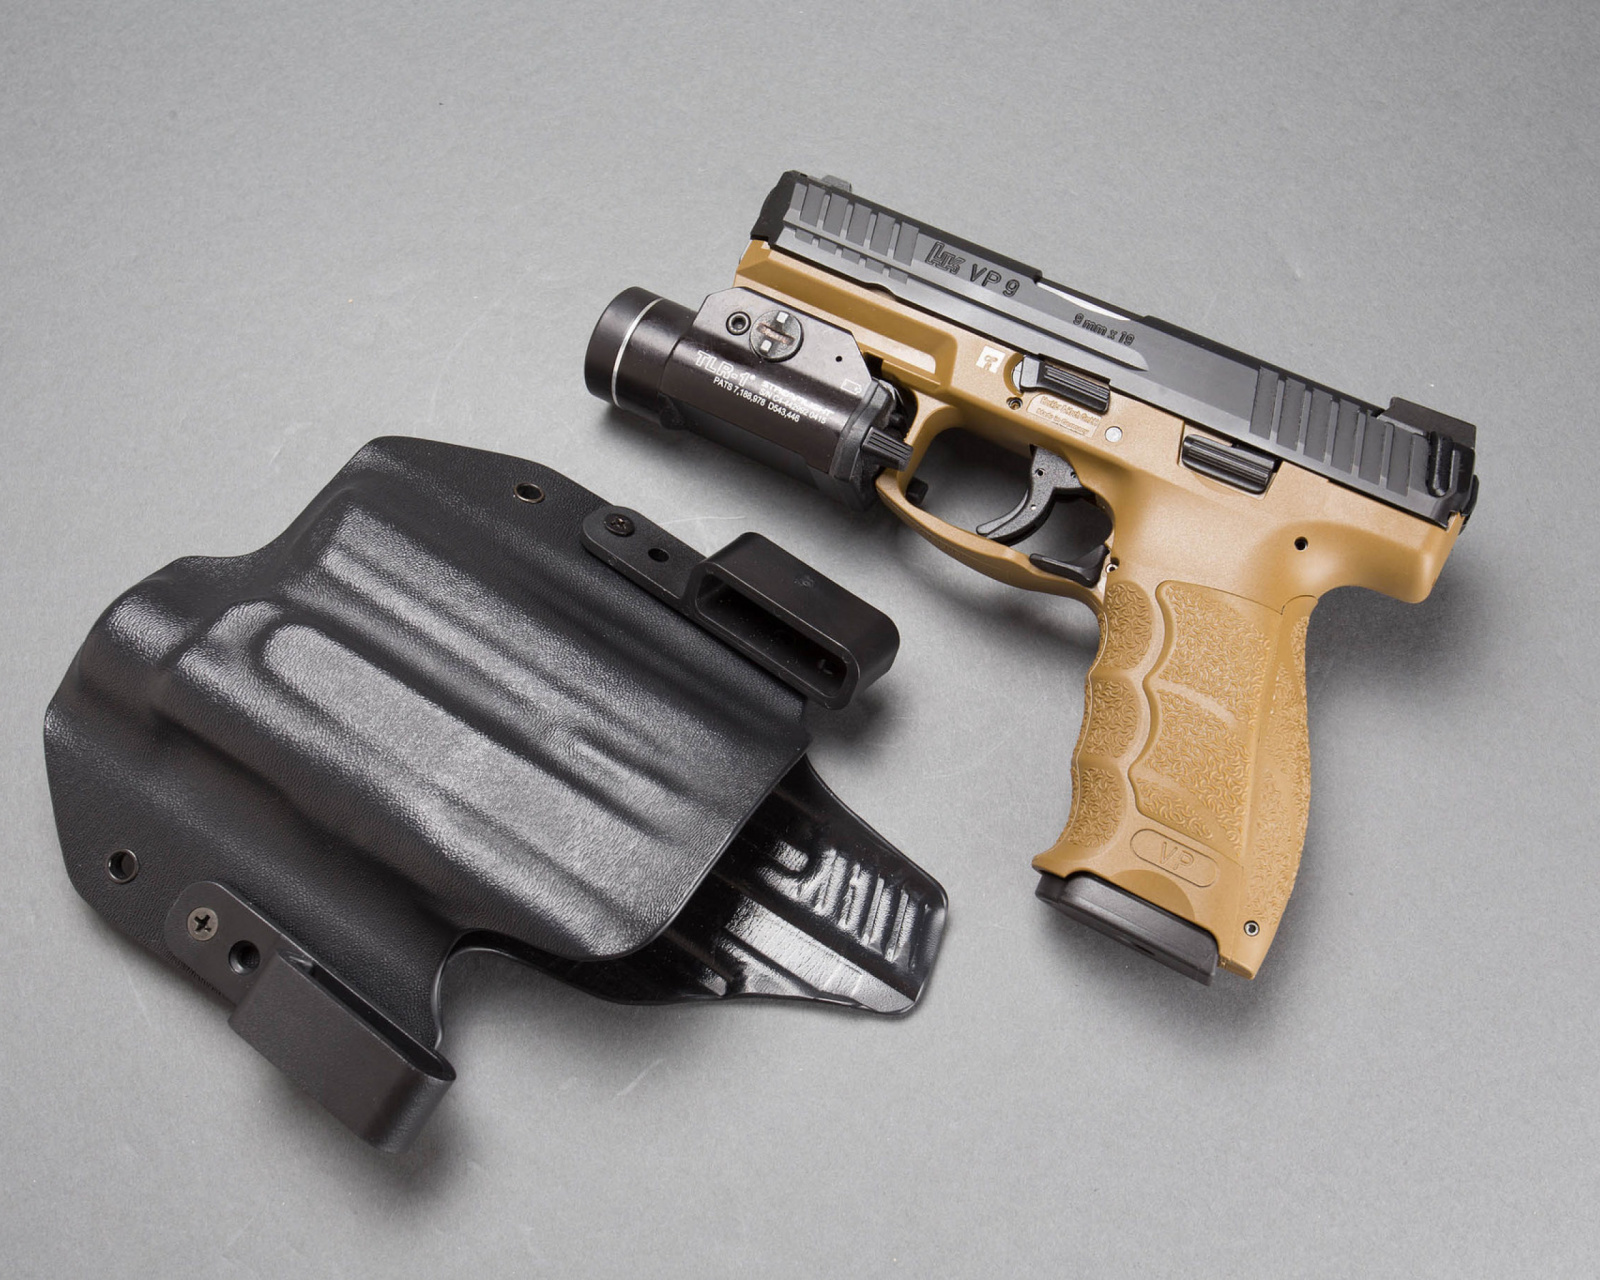 Pistols Heckler & Koch 9mm screenshot #1 1600x1280